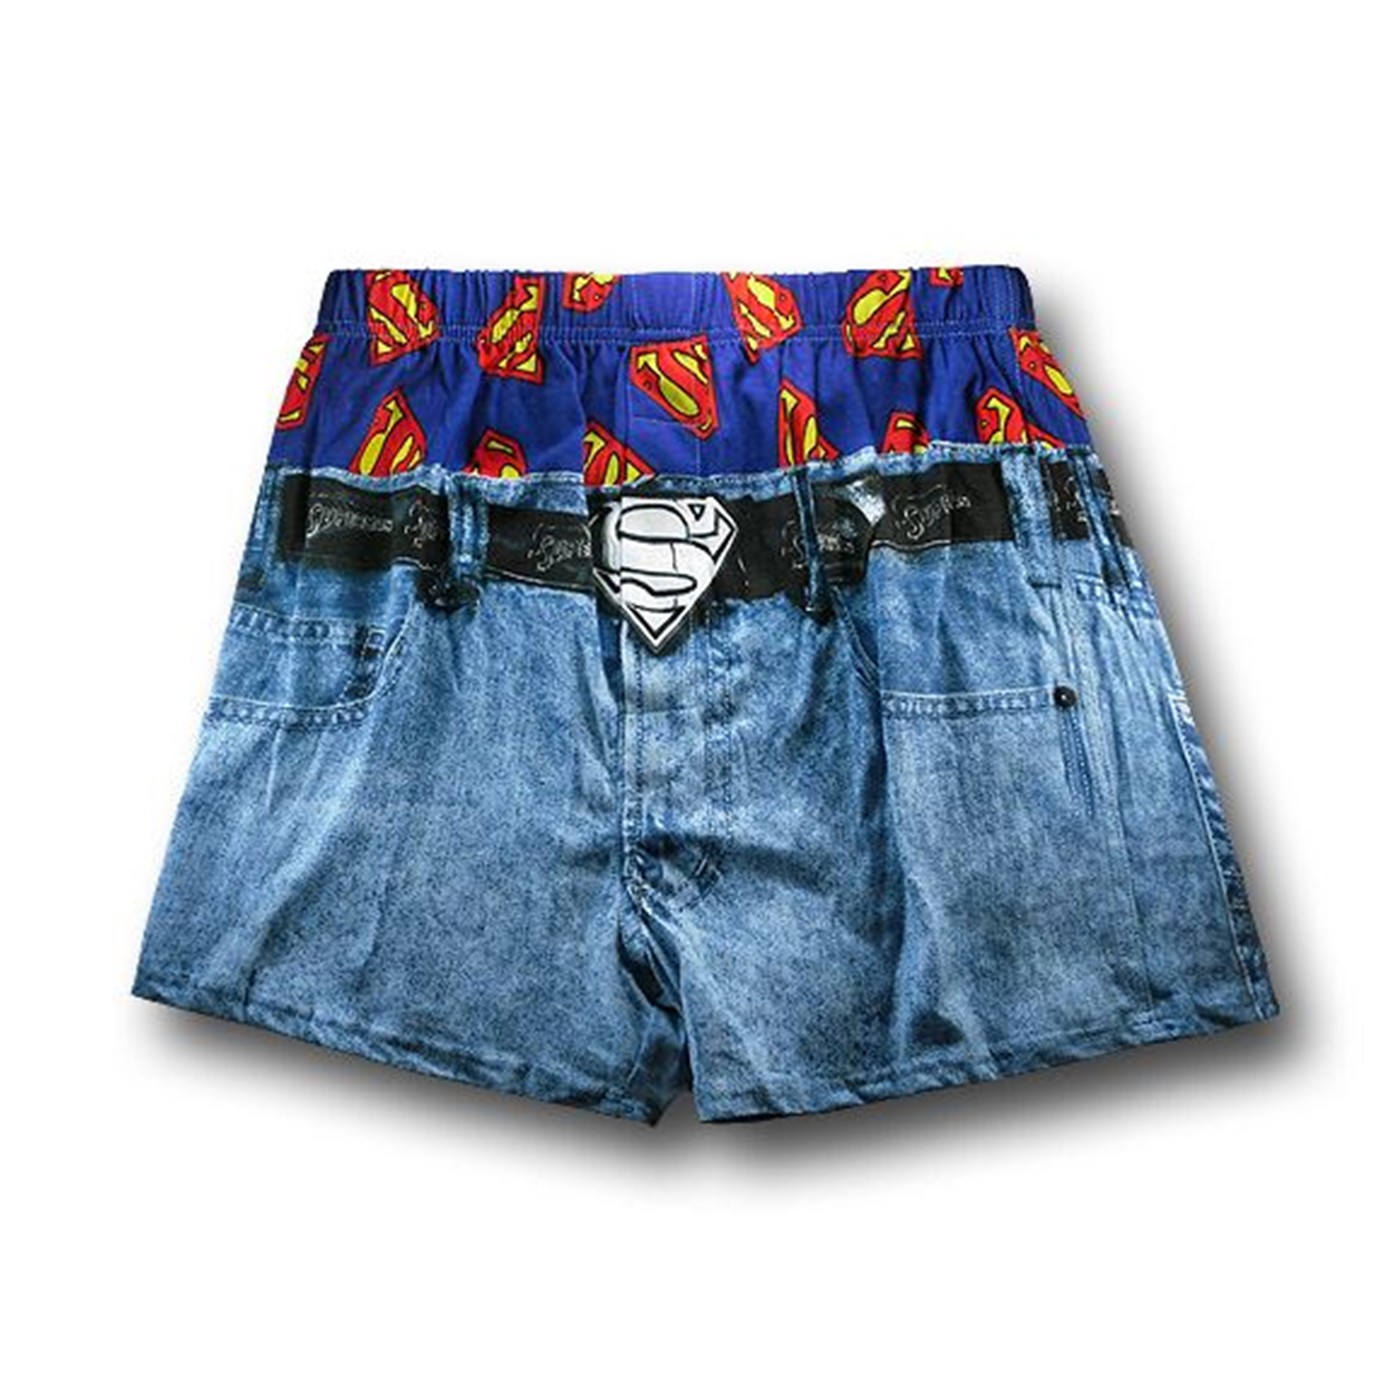 Superman Under Jeans Boxer Shorts